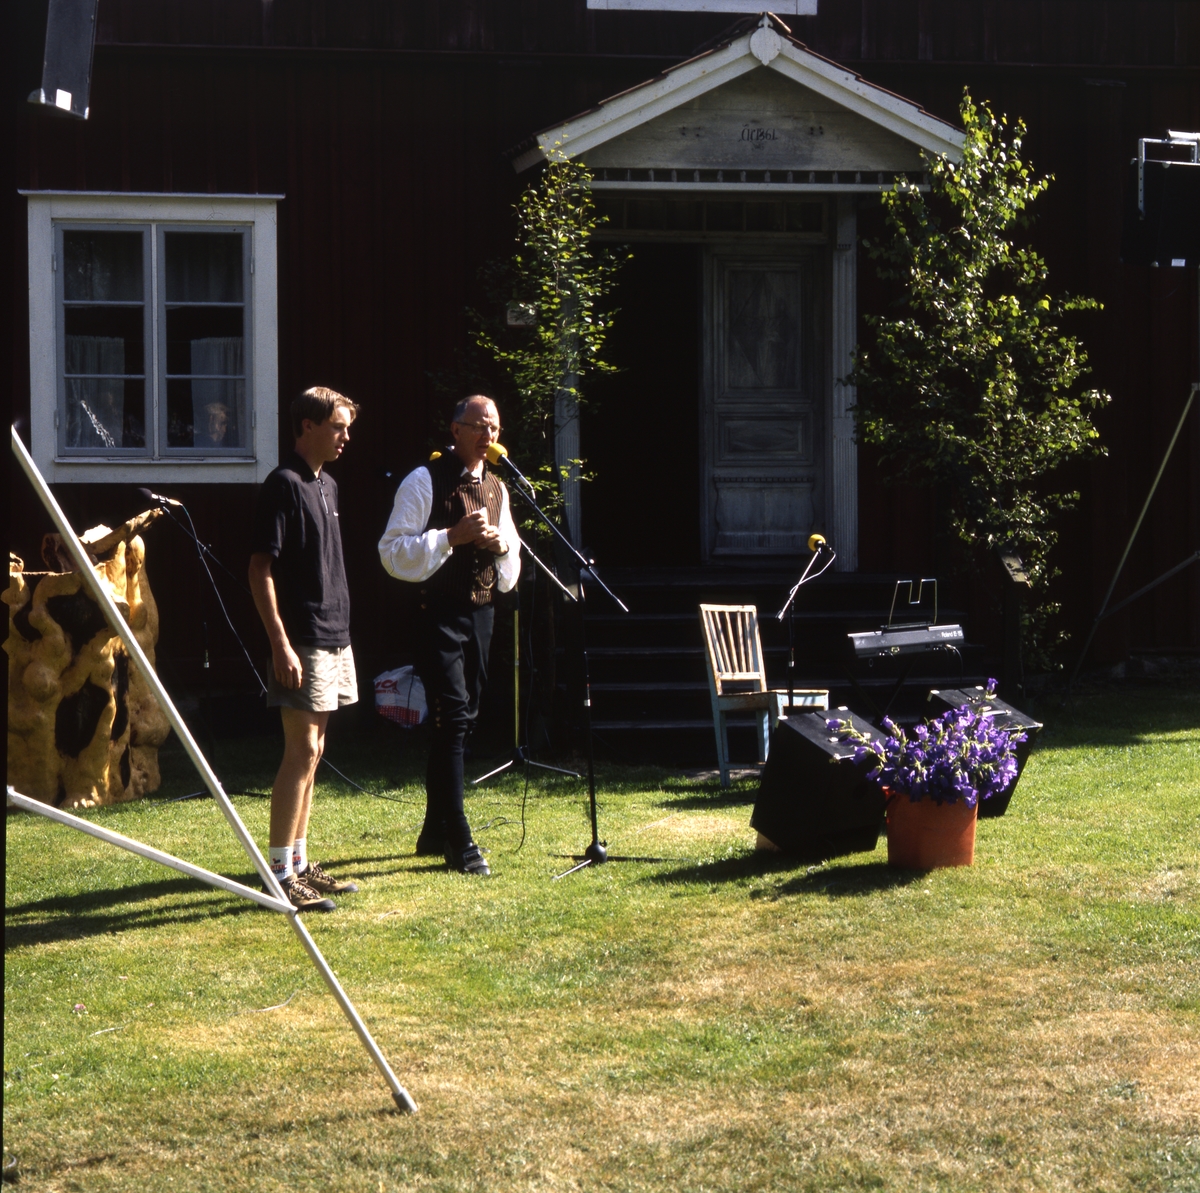 Rengsjöfesten 11 juli 1999. En man klädd i hembygdsdräkt talar i en mikrofon och bredvid honom står en yngre man. Det delas ut belöningar. Där finns en talarstol och en högtalaranläggning.